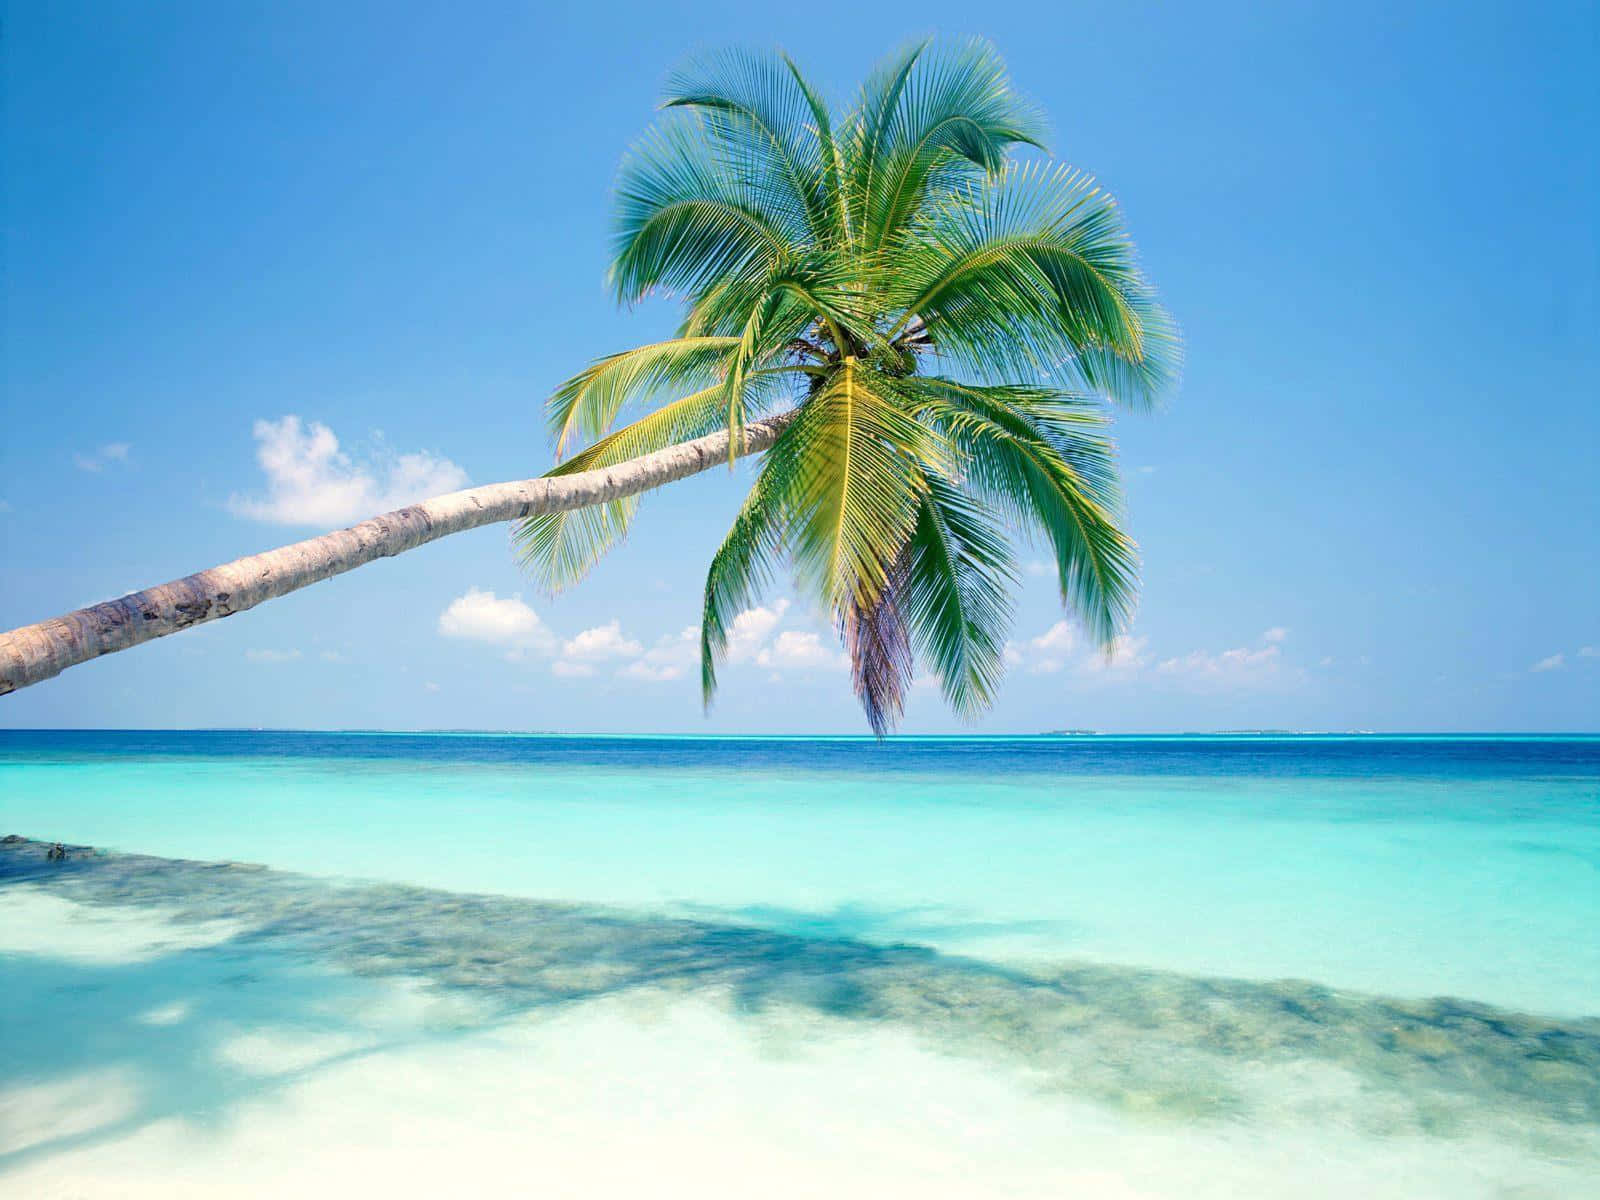 Immaginedi Una Idilliaca Spiaggia Di Sabbia Bianca Con Le Acque Limpide E Scintillanti Di Un'isola Tropicale. Sfondo